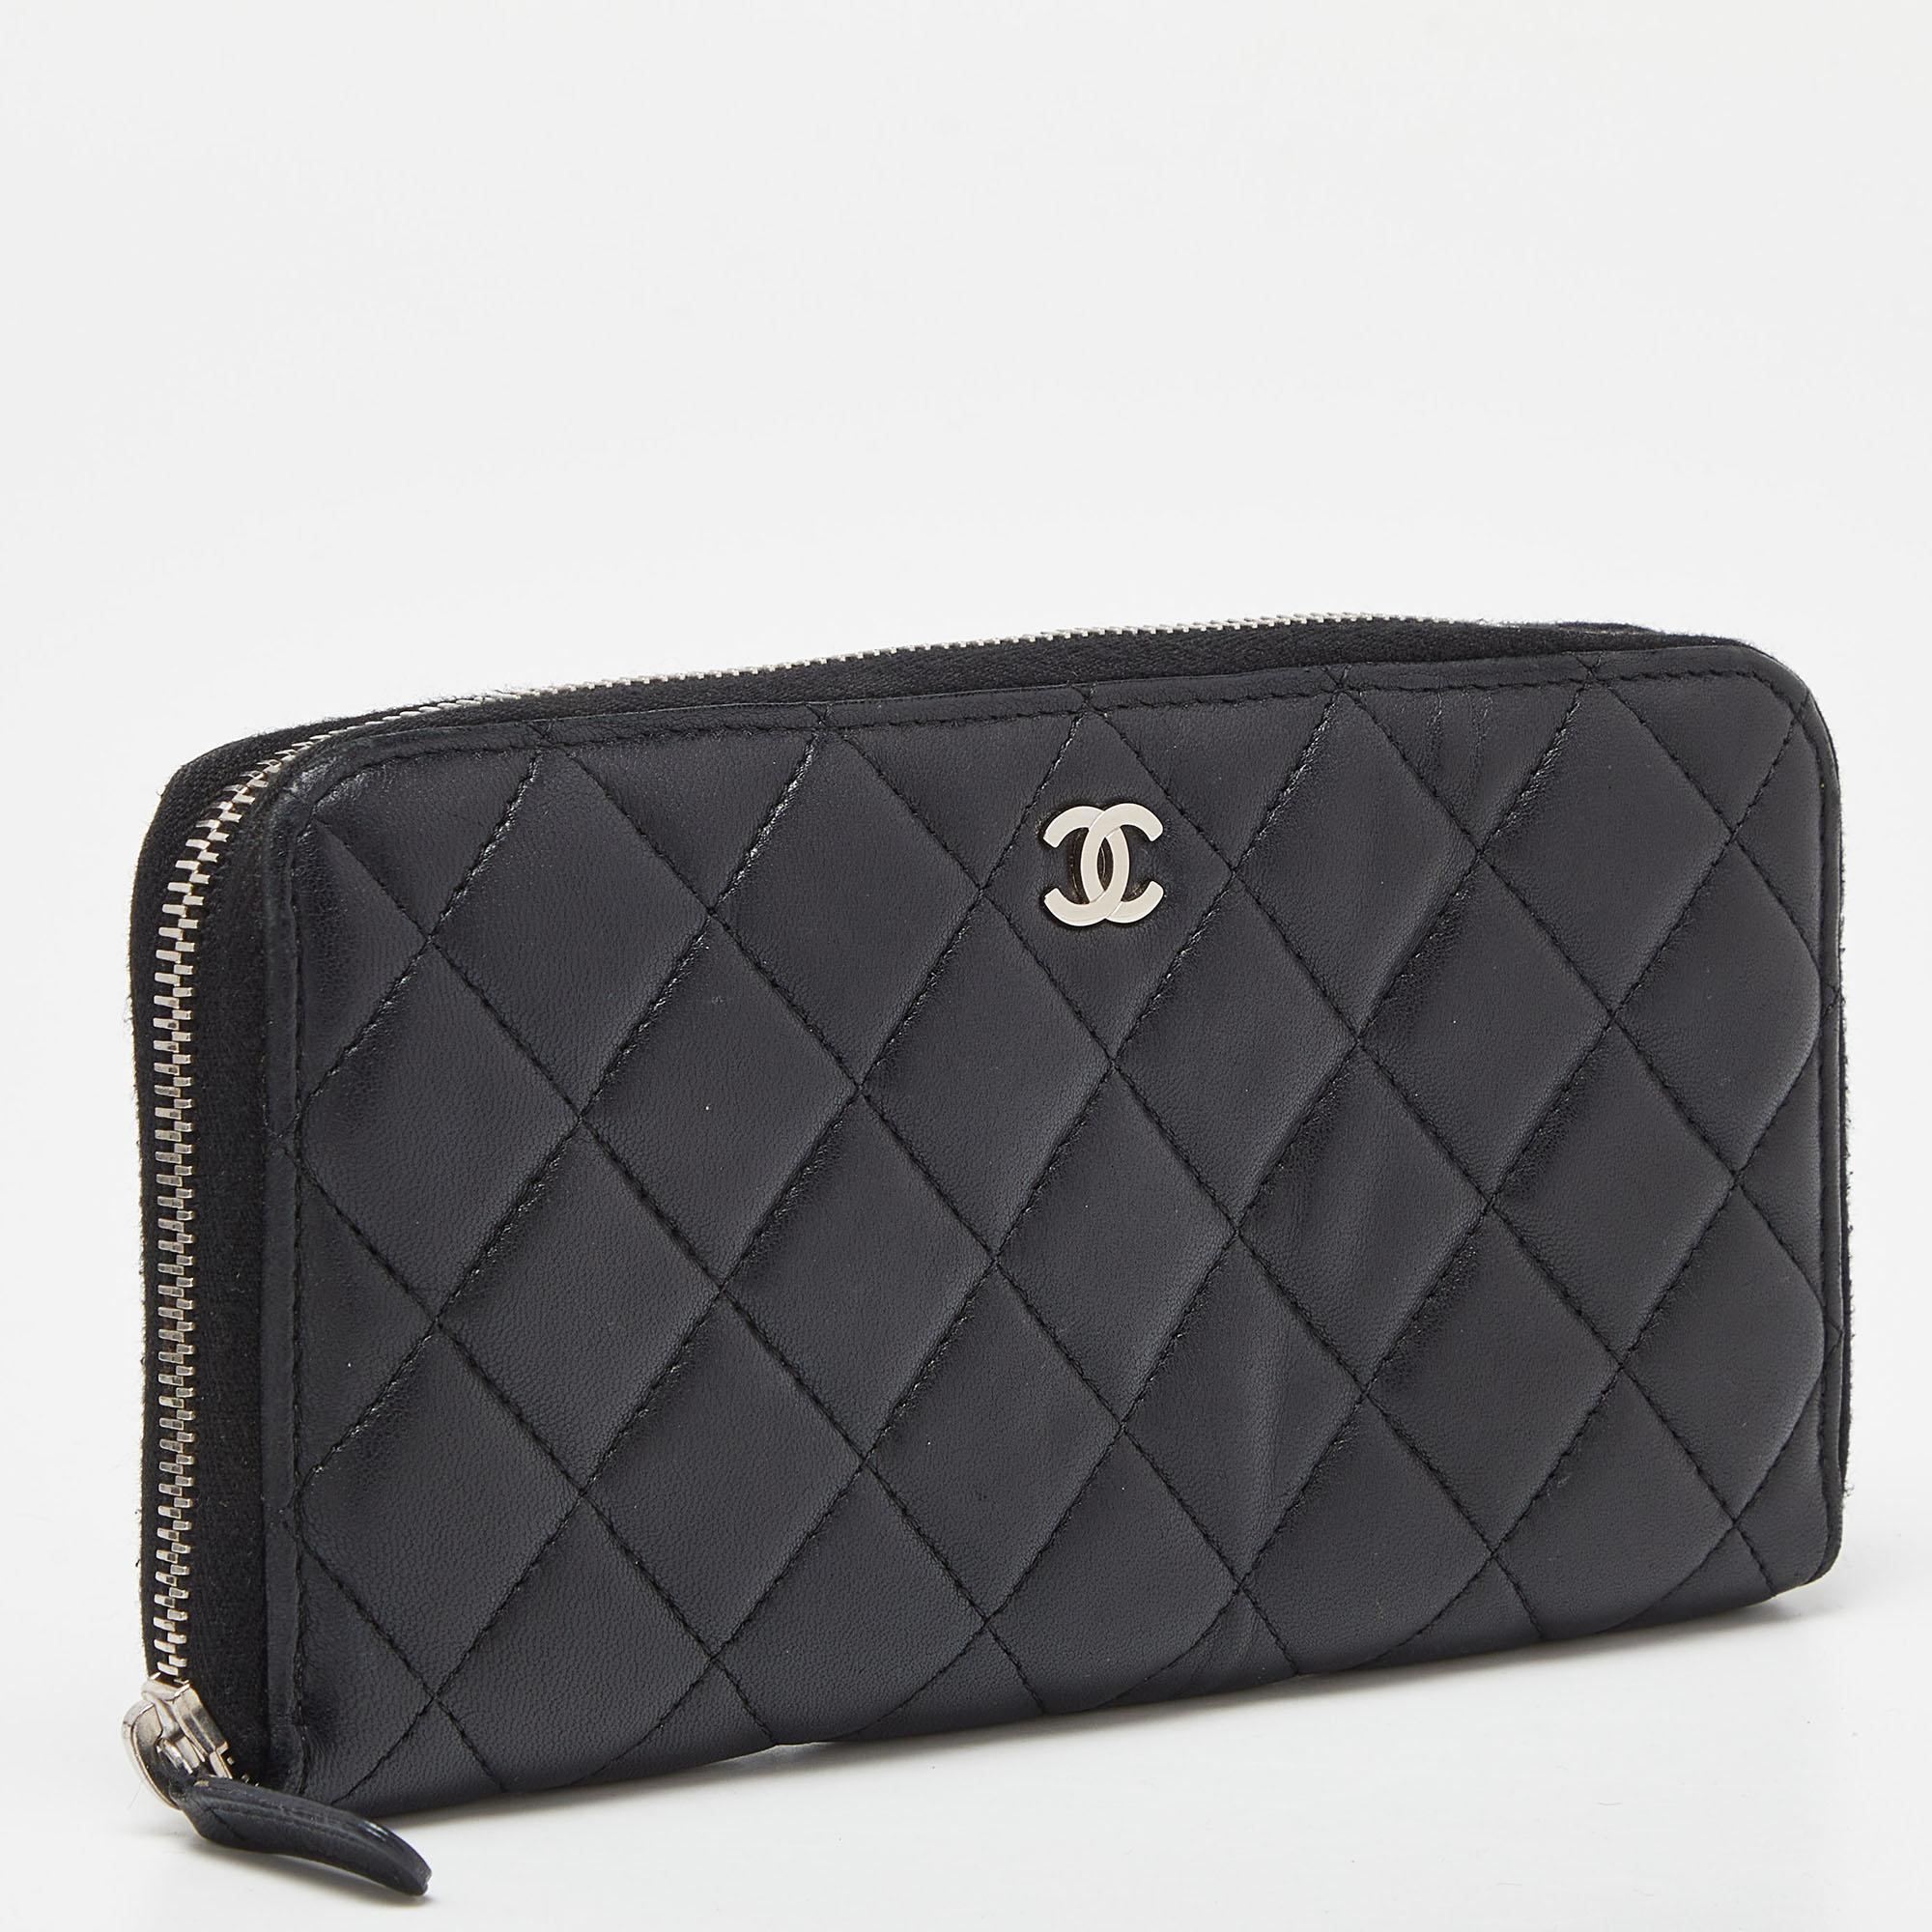 Ce portefeuille Chanel est soigneusement confectionné pour vous offrir un accessoire luxueux que vous chérirez. Il se caractérise par une qualité élevée et un attrait durable. Investissez-y dès aujourd'hui !

Comprend
Sac à poussière de marque